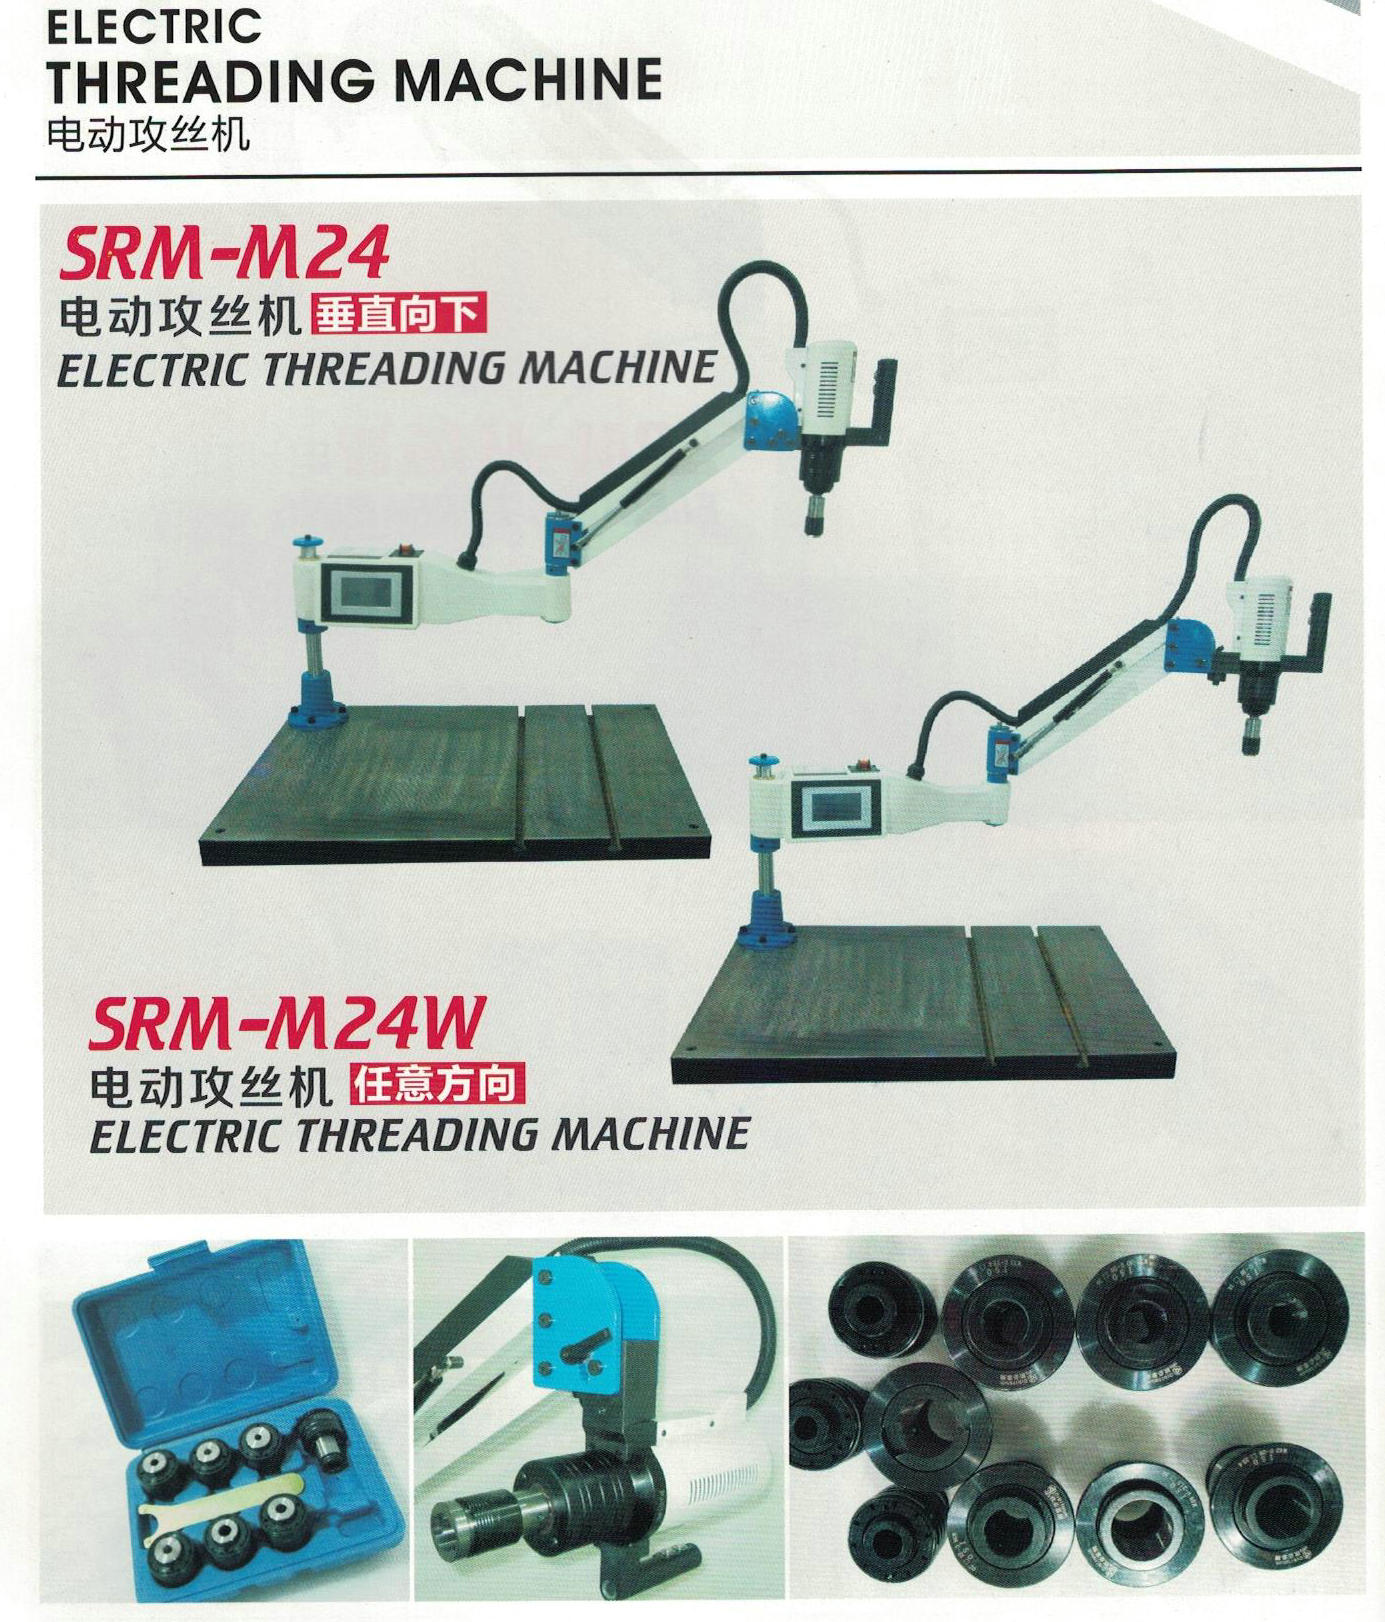 ELECTRICAL THREADING MACHINE SRAM24 / SRAM24W